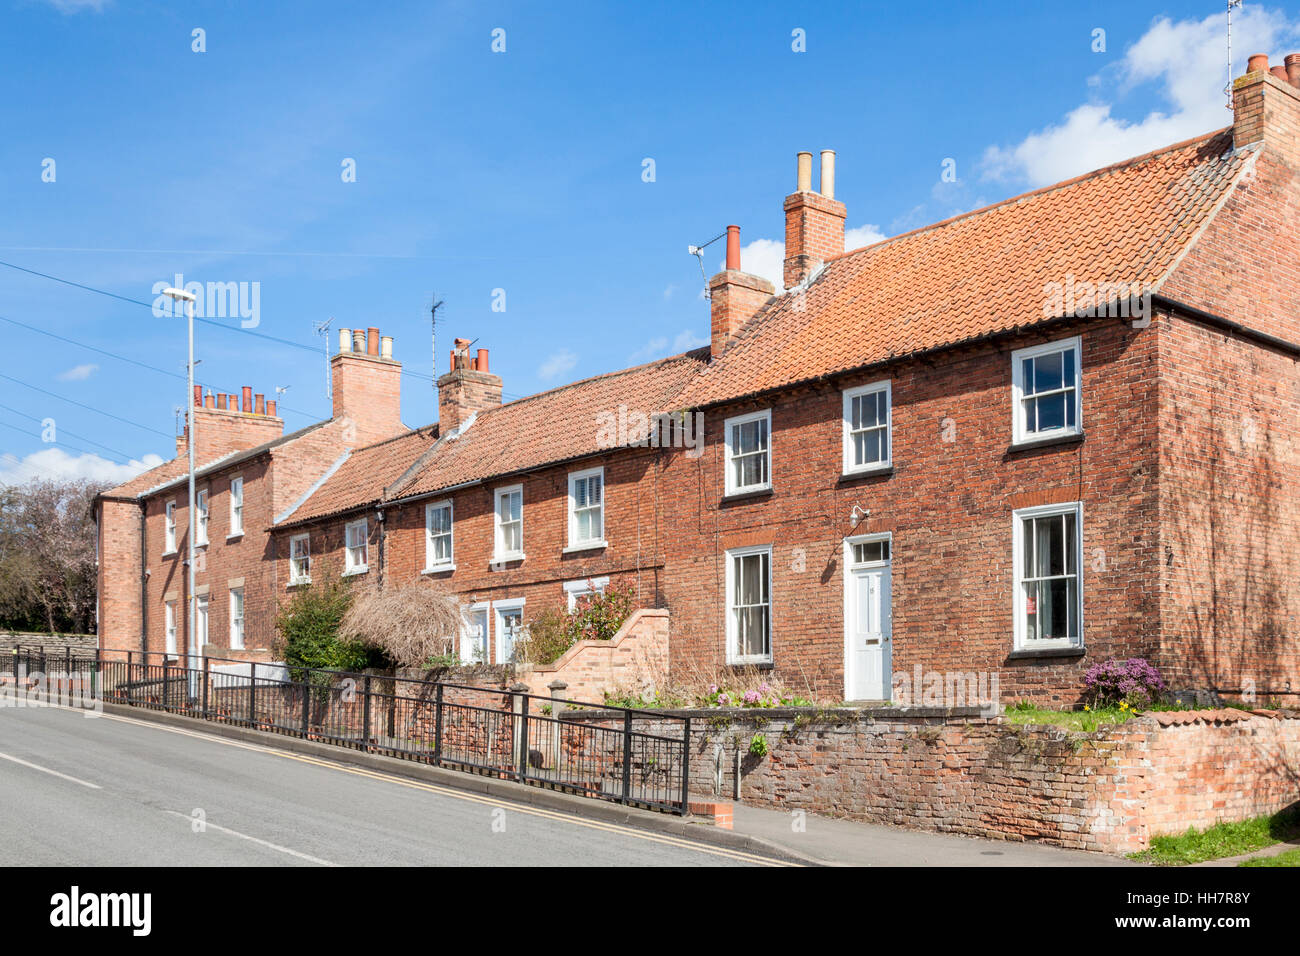 Construit en brique cottages en terrasses sur une colline, Southwell, Nottinghamshire, Angleterre, RU Banque D'Images